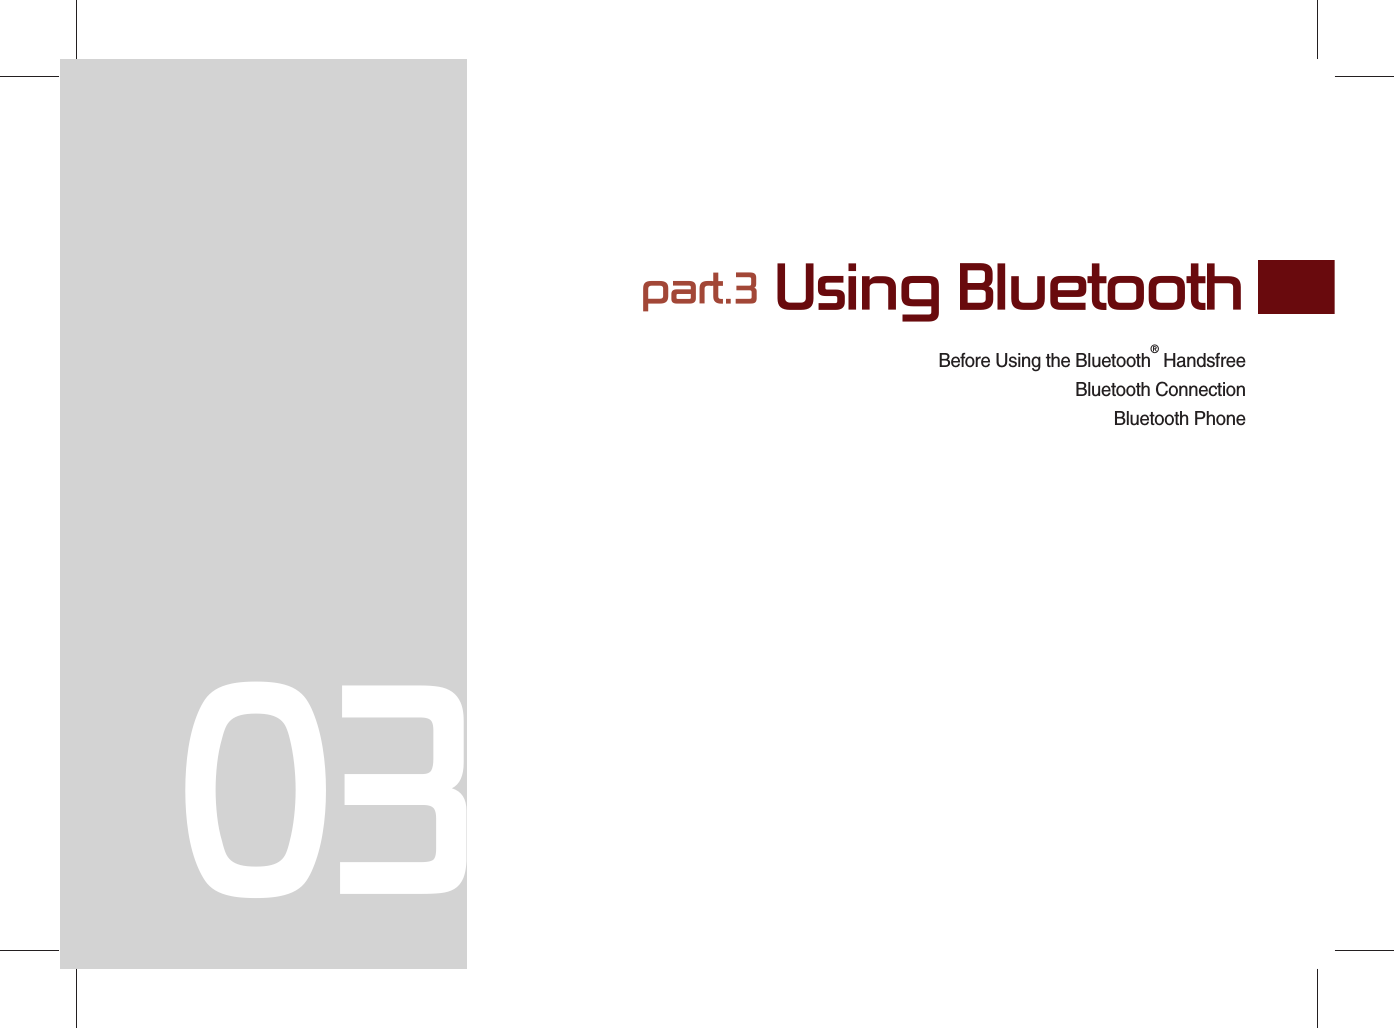 Before Using the Bluetooth® HandsfreeBluetooth ConnectionBluetooth Phonepart.3 Using Bluetooth03